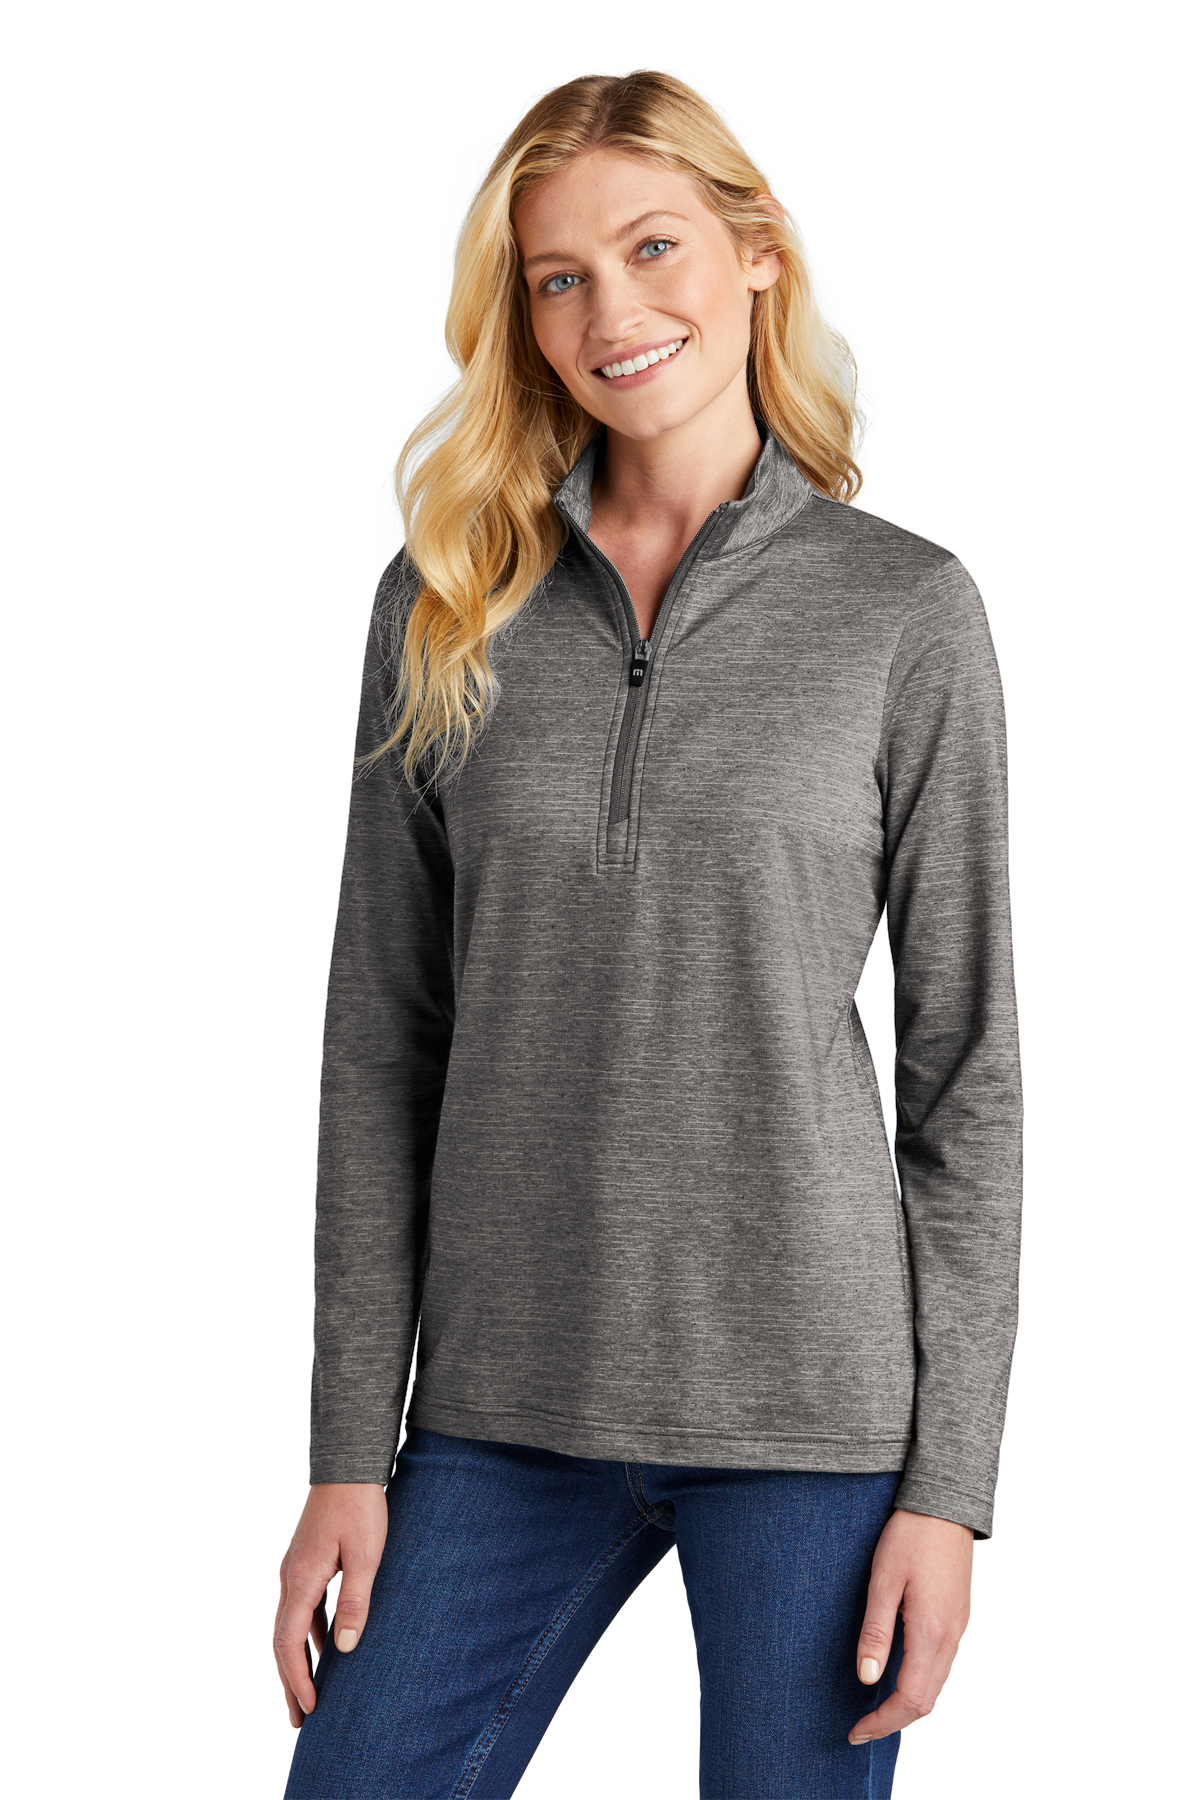 Ladies 1/4 zip sweatshirt LV - Educational Outfitters - Tampa